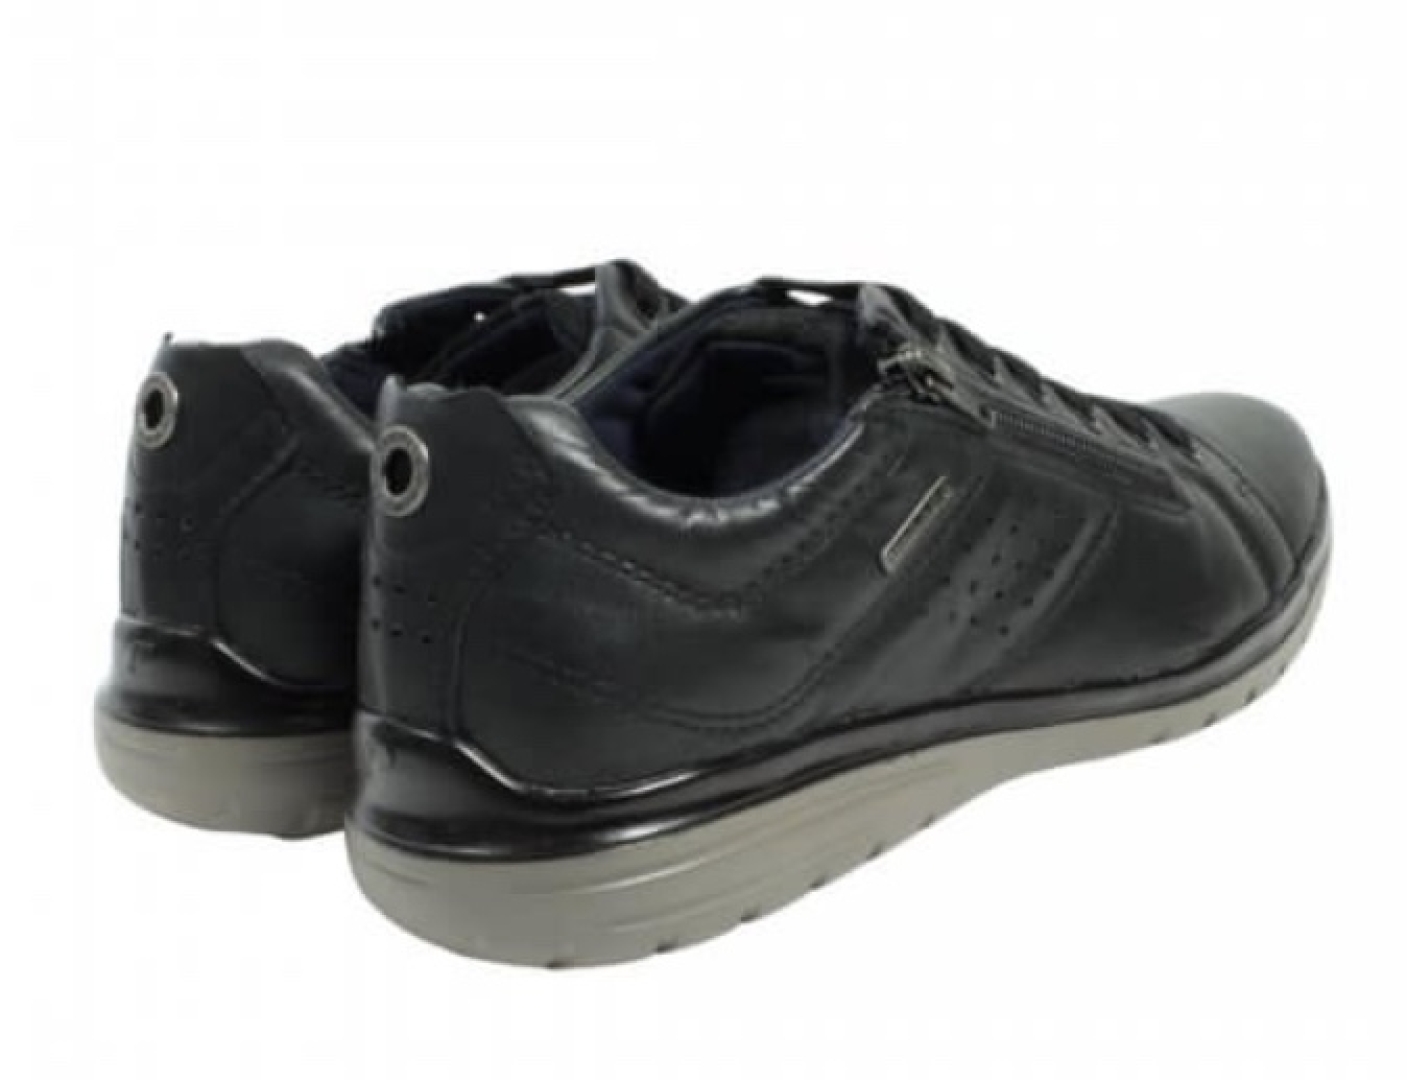 Zapato casual para hombre en piel color negro de PEGADA. H-293